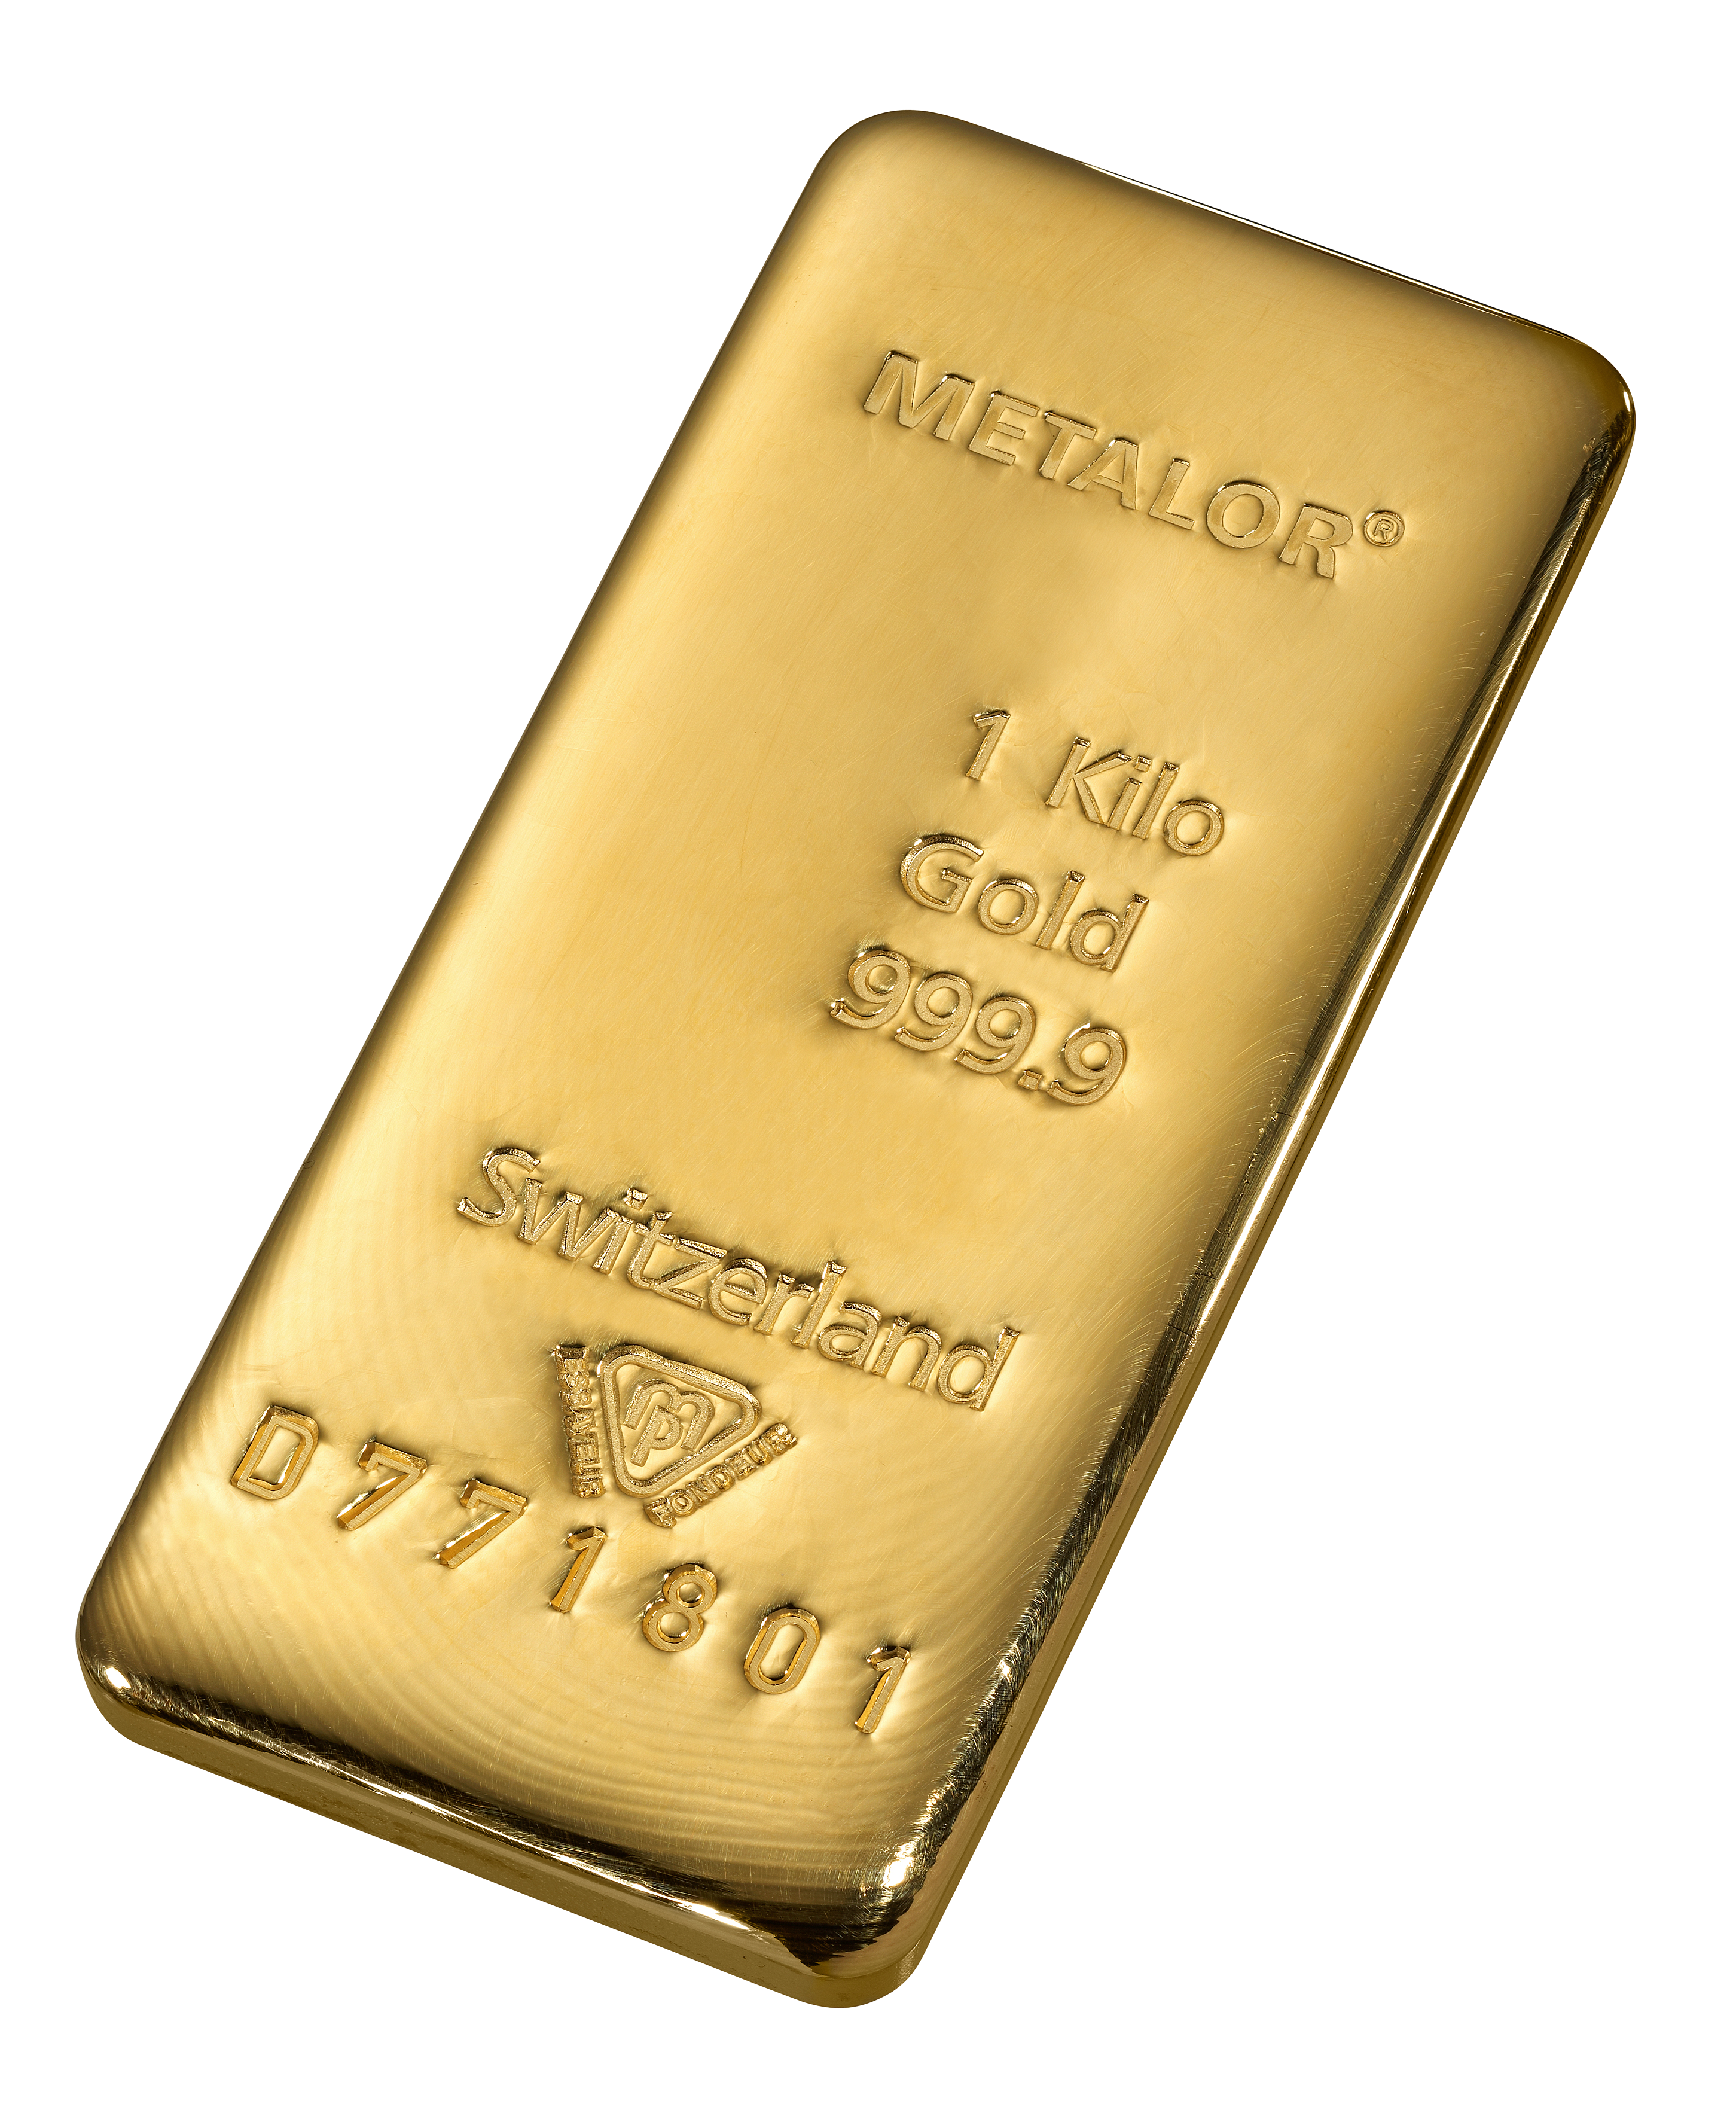 Alabama En ontsnappen 1 kilo goud - Aankoop en verkoop goudprijs - beleggen in goud